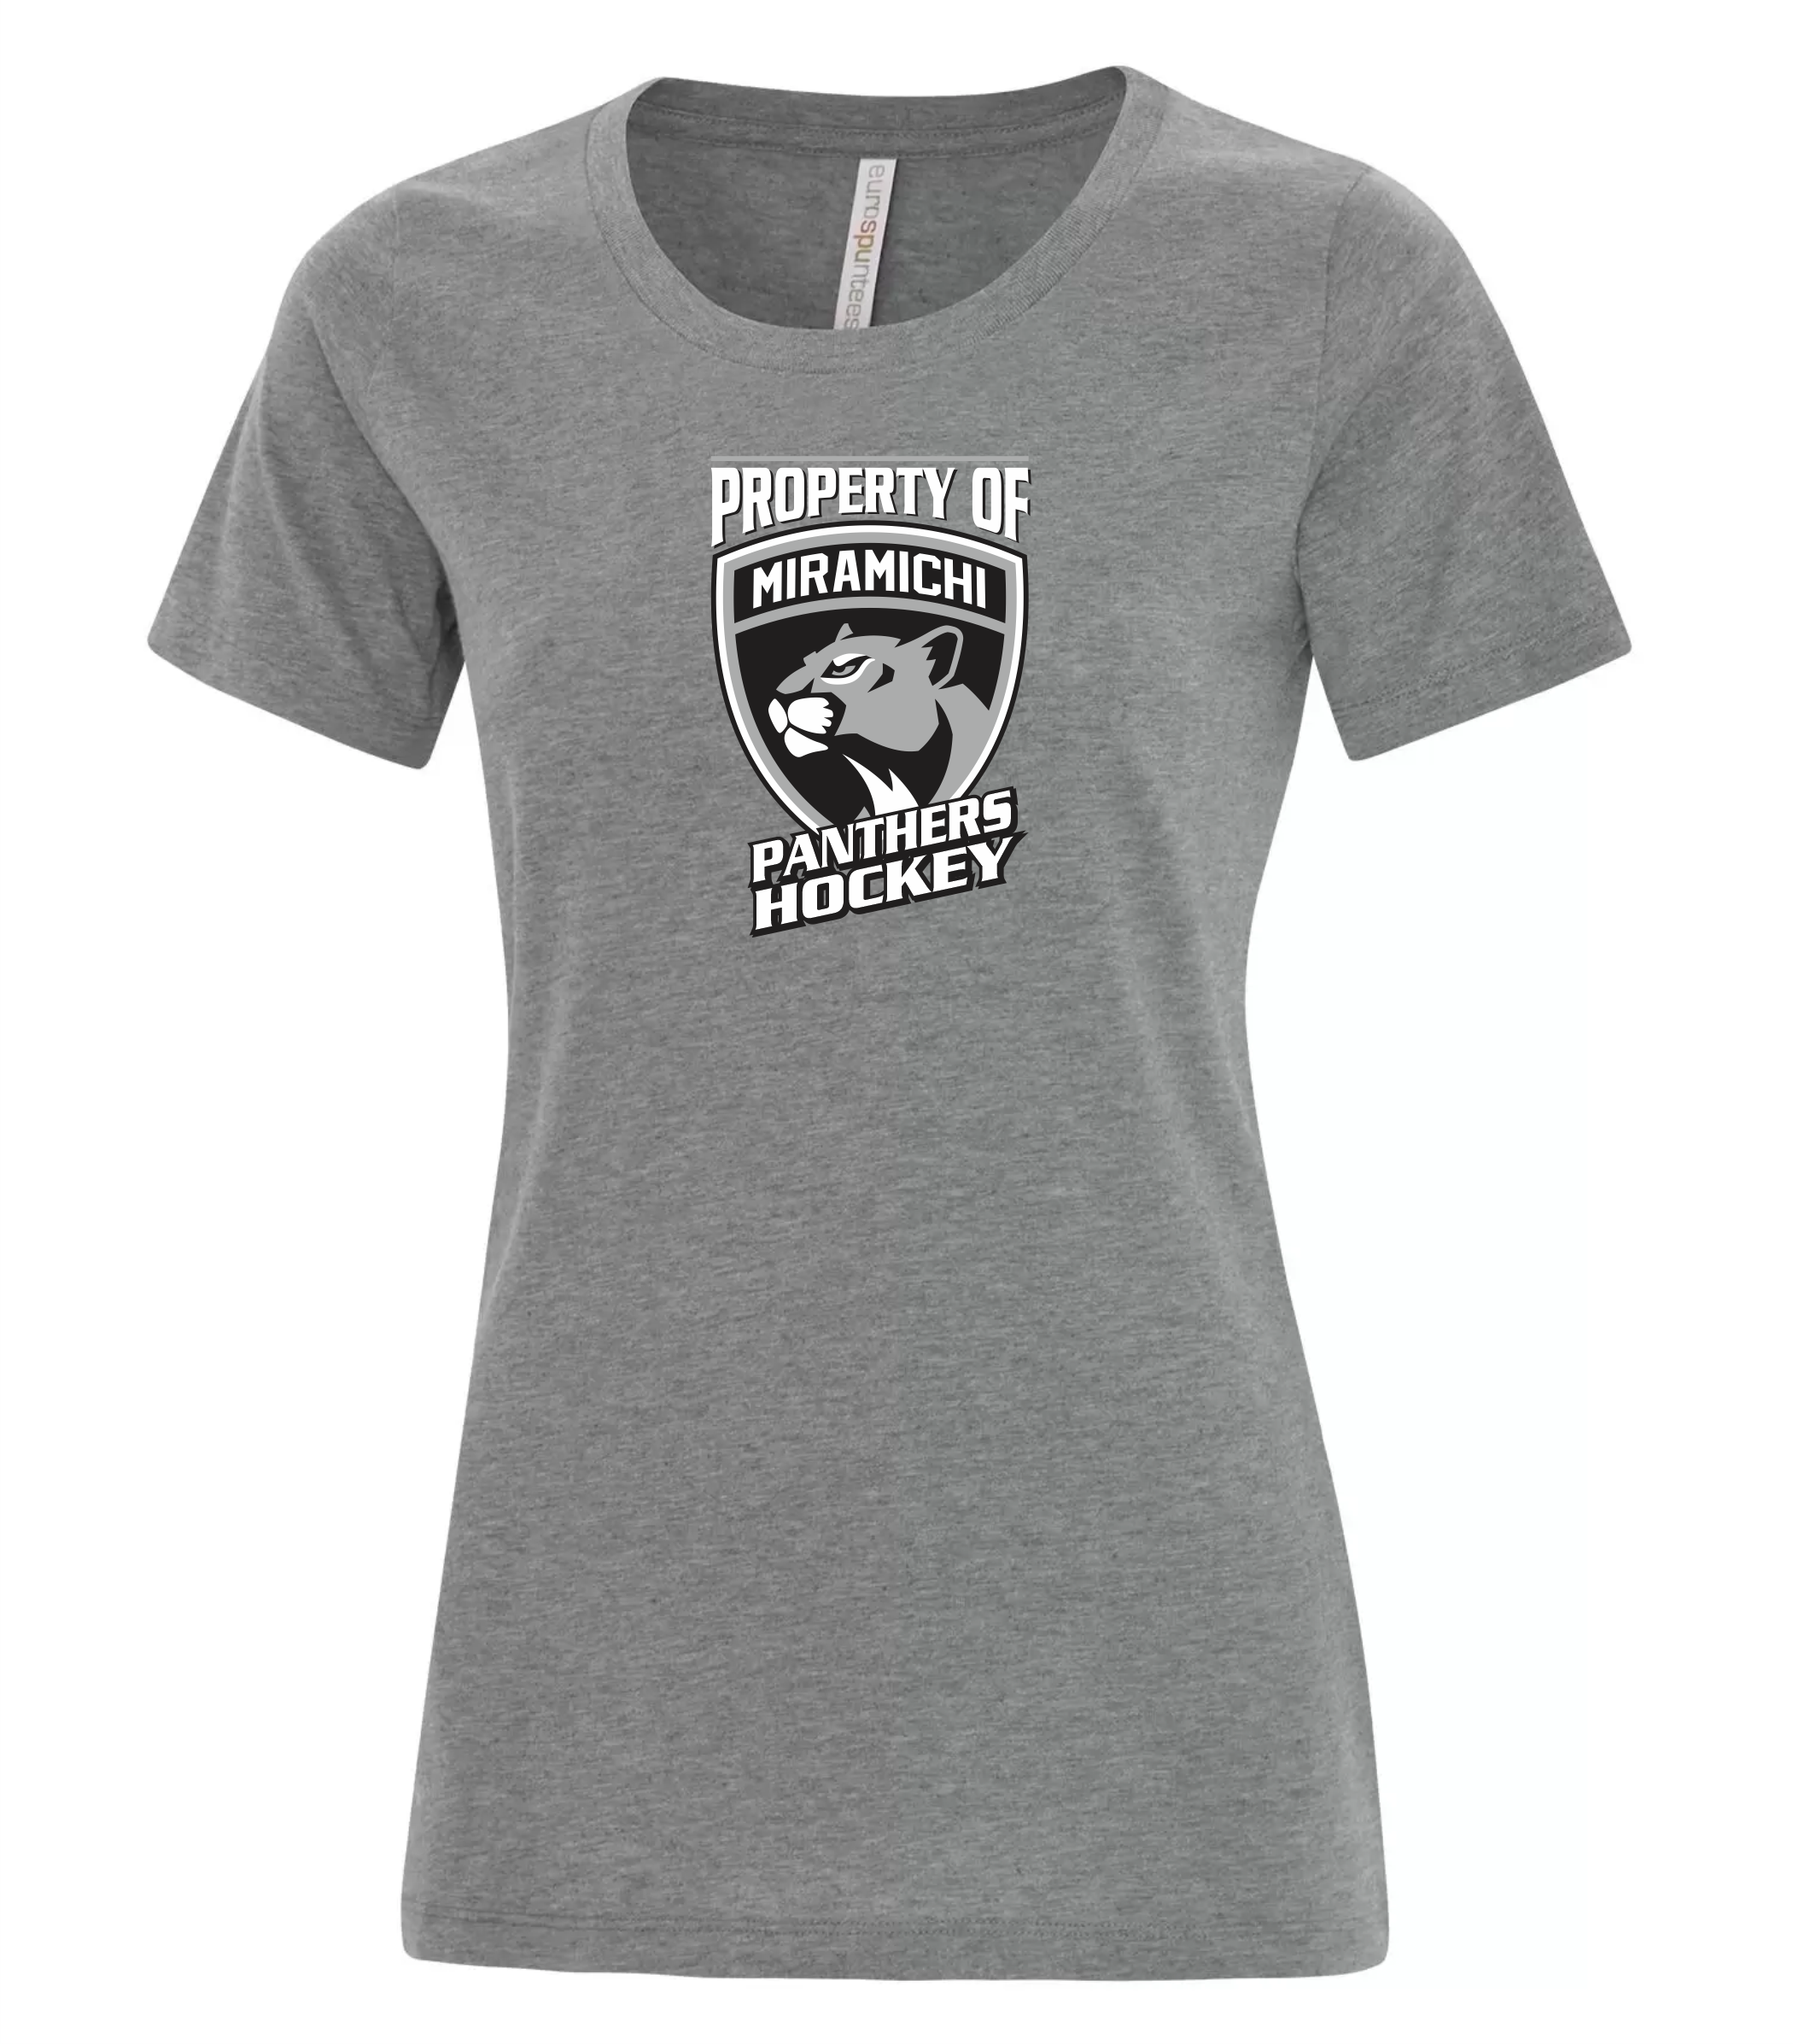 Miramichi Panthers - Ladies Cotton T-shirt